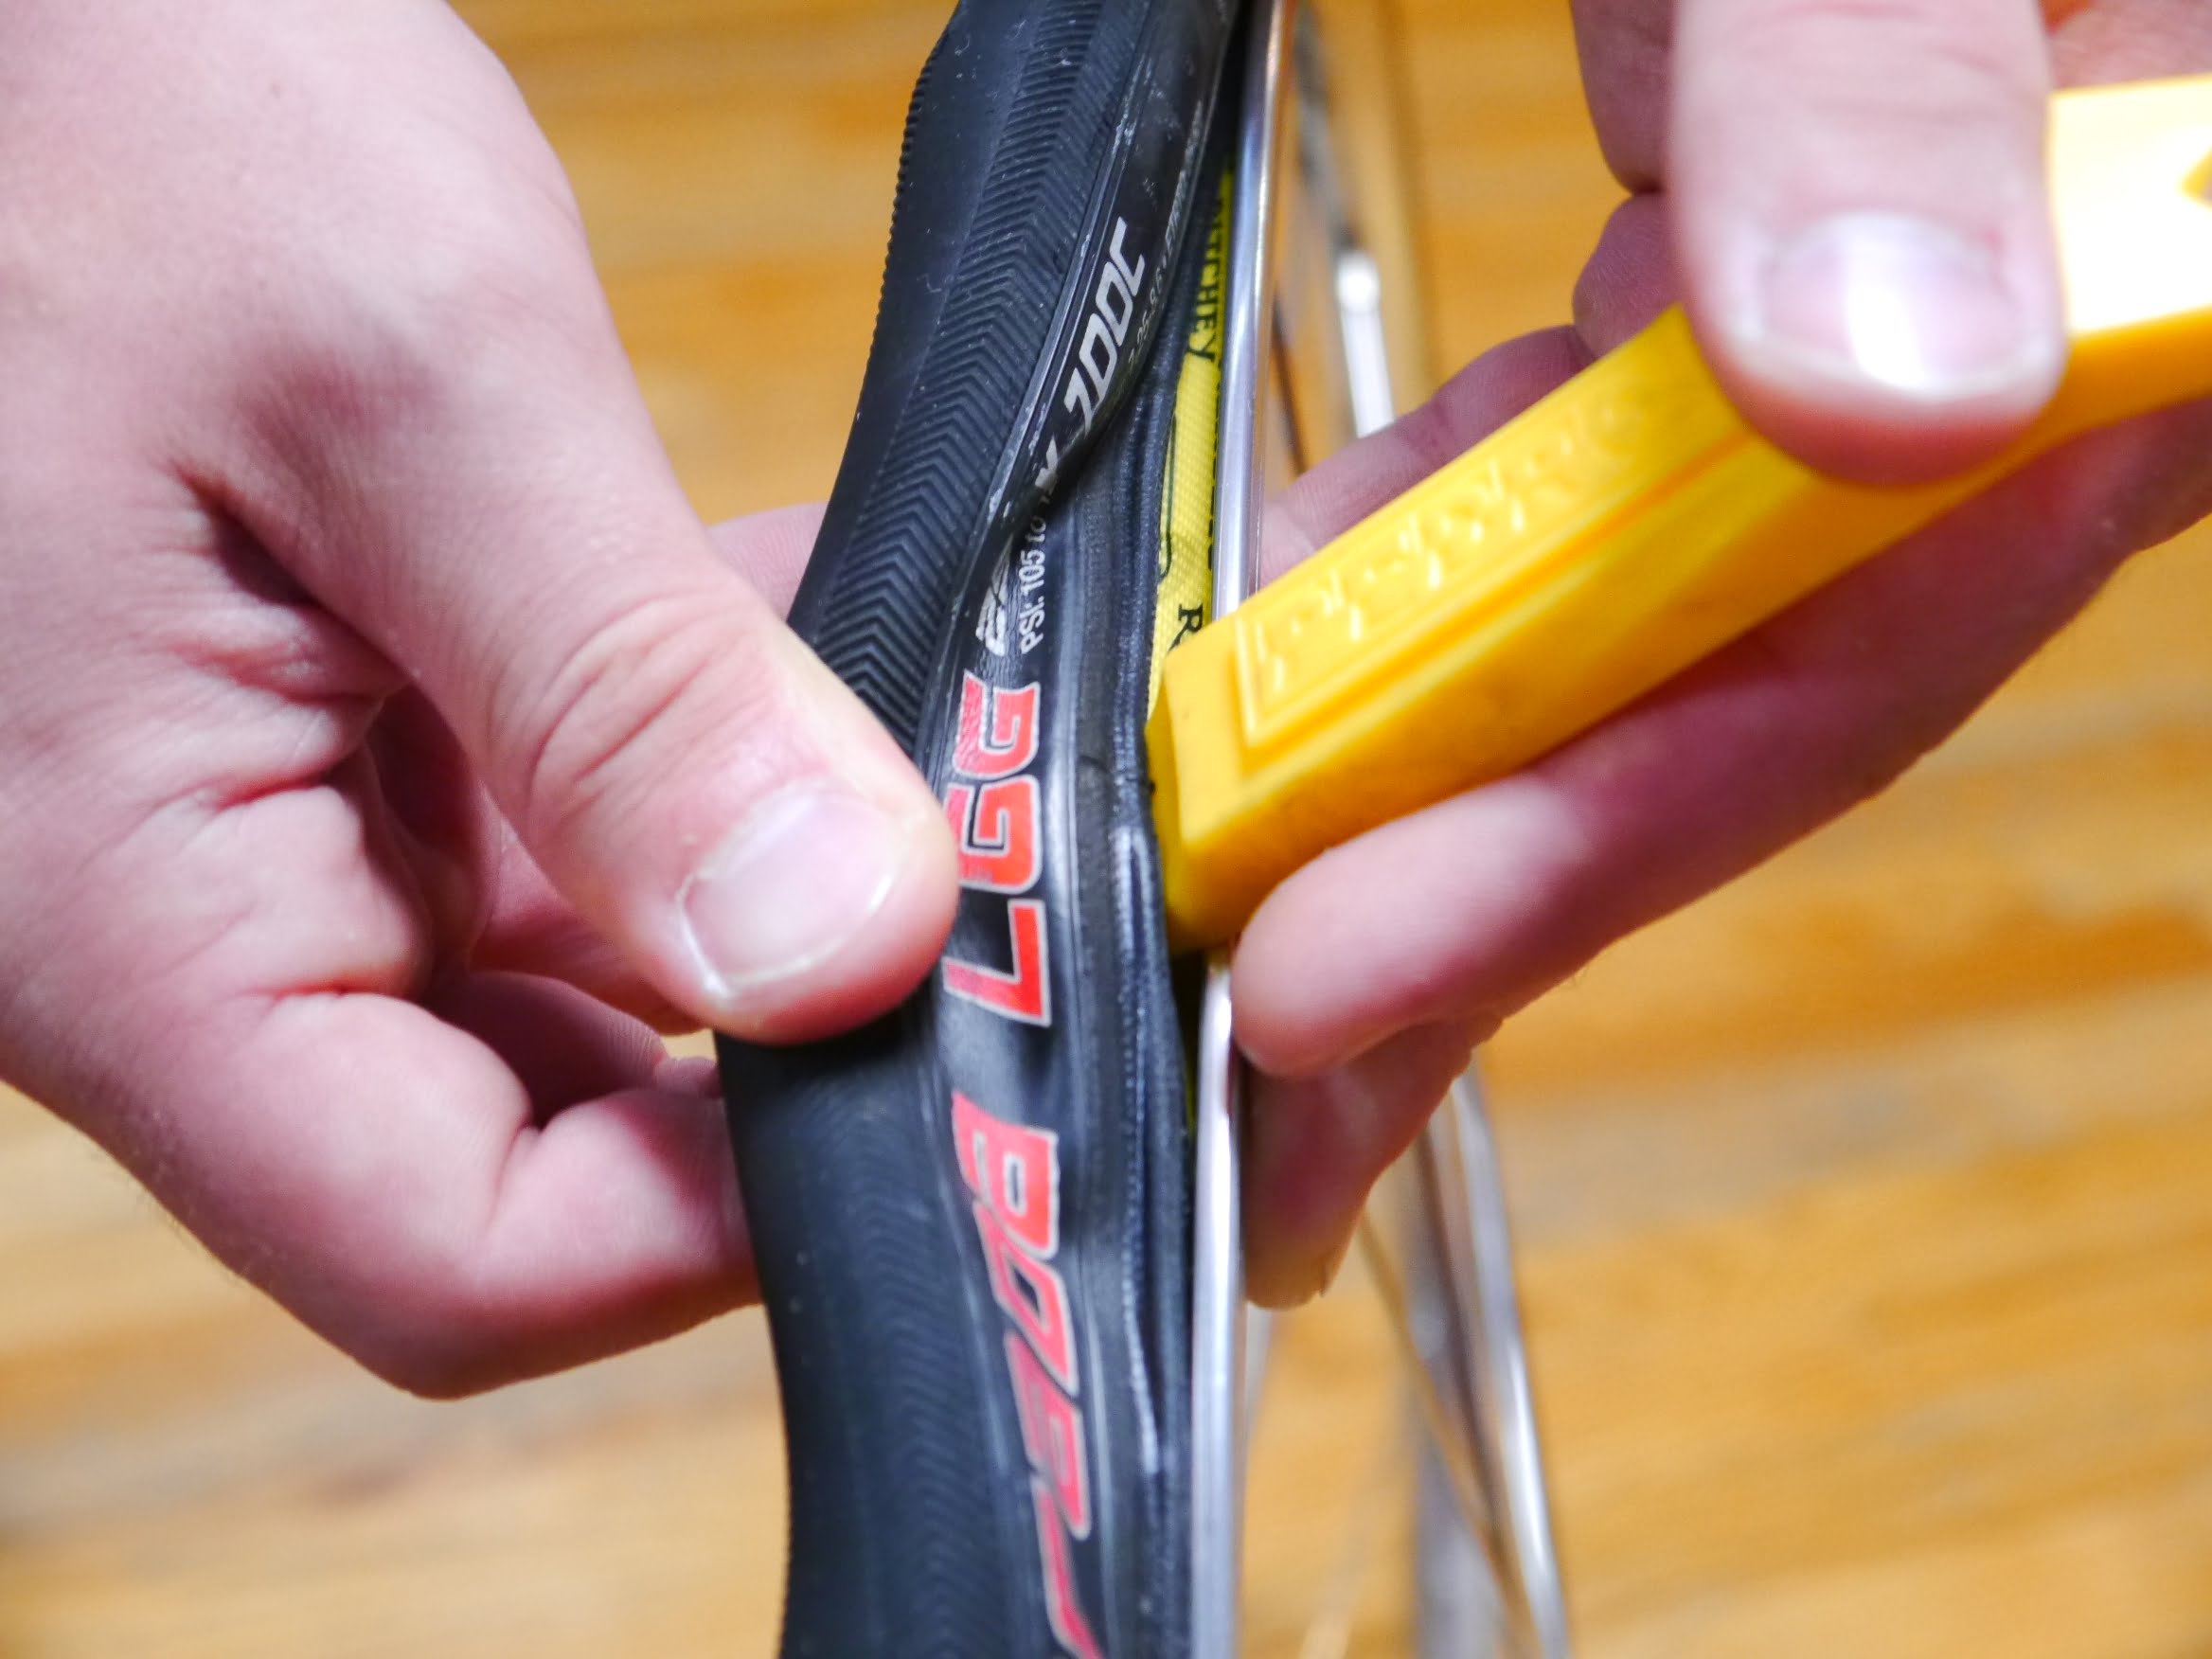 Započinjanje skidanja gume pomoću alata: Pažljivo se umetne između spoljne gume i felne, pazeći pritom da se ne pričkine unutrašnja guma.